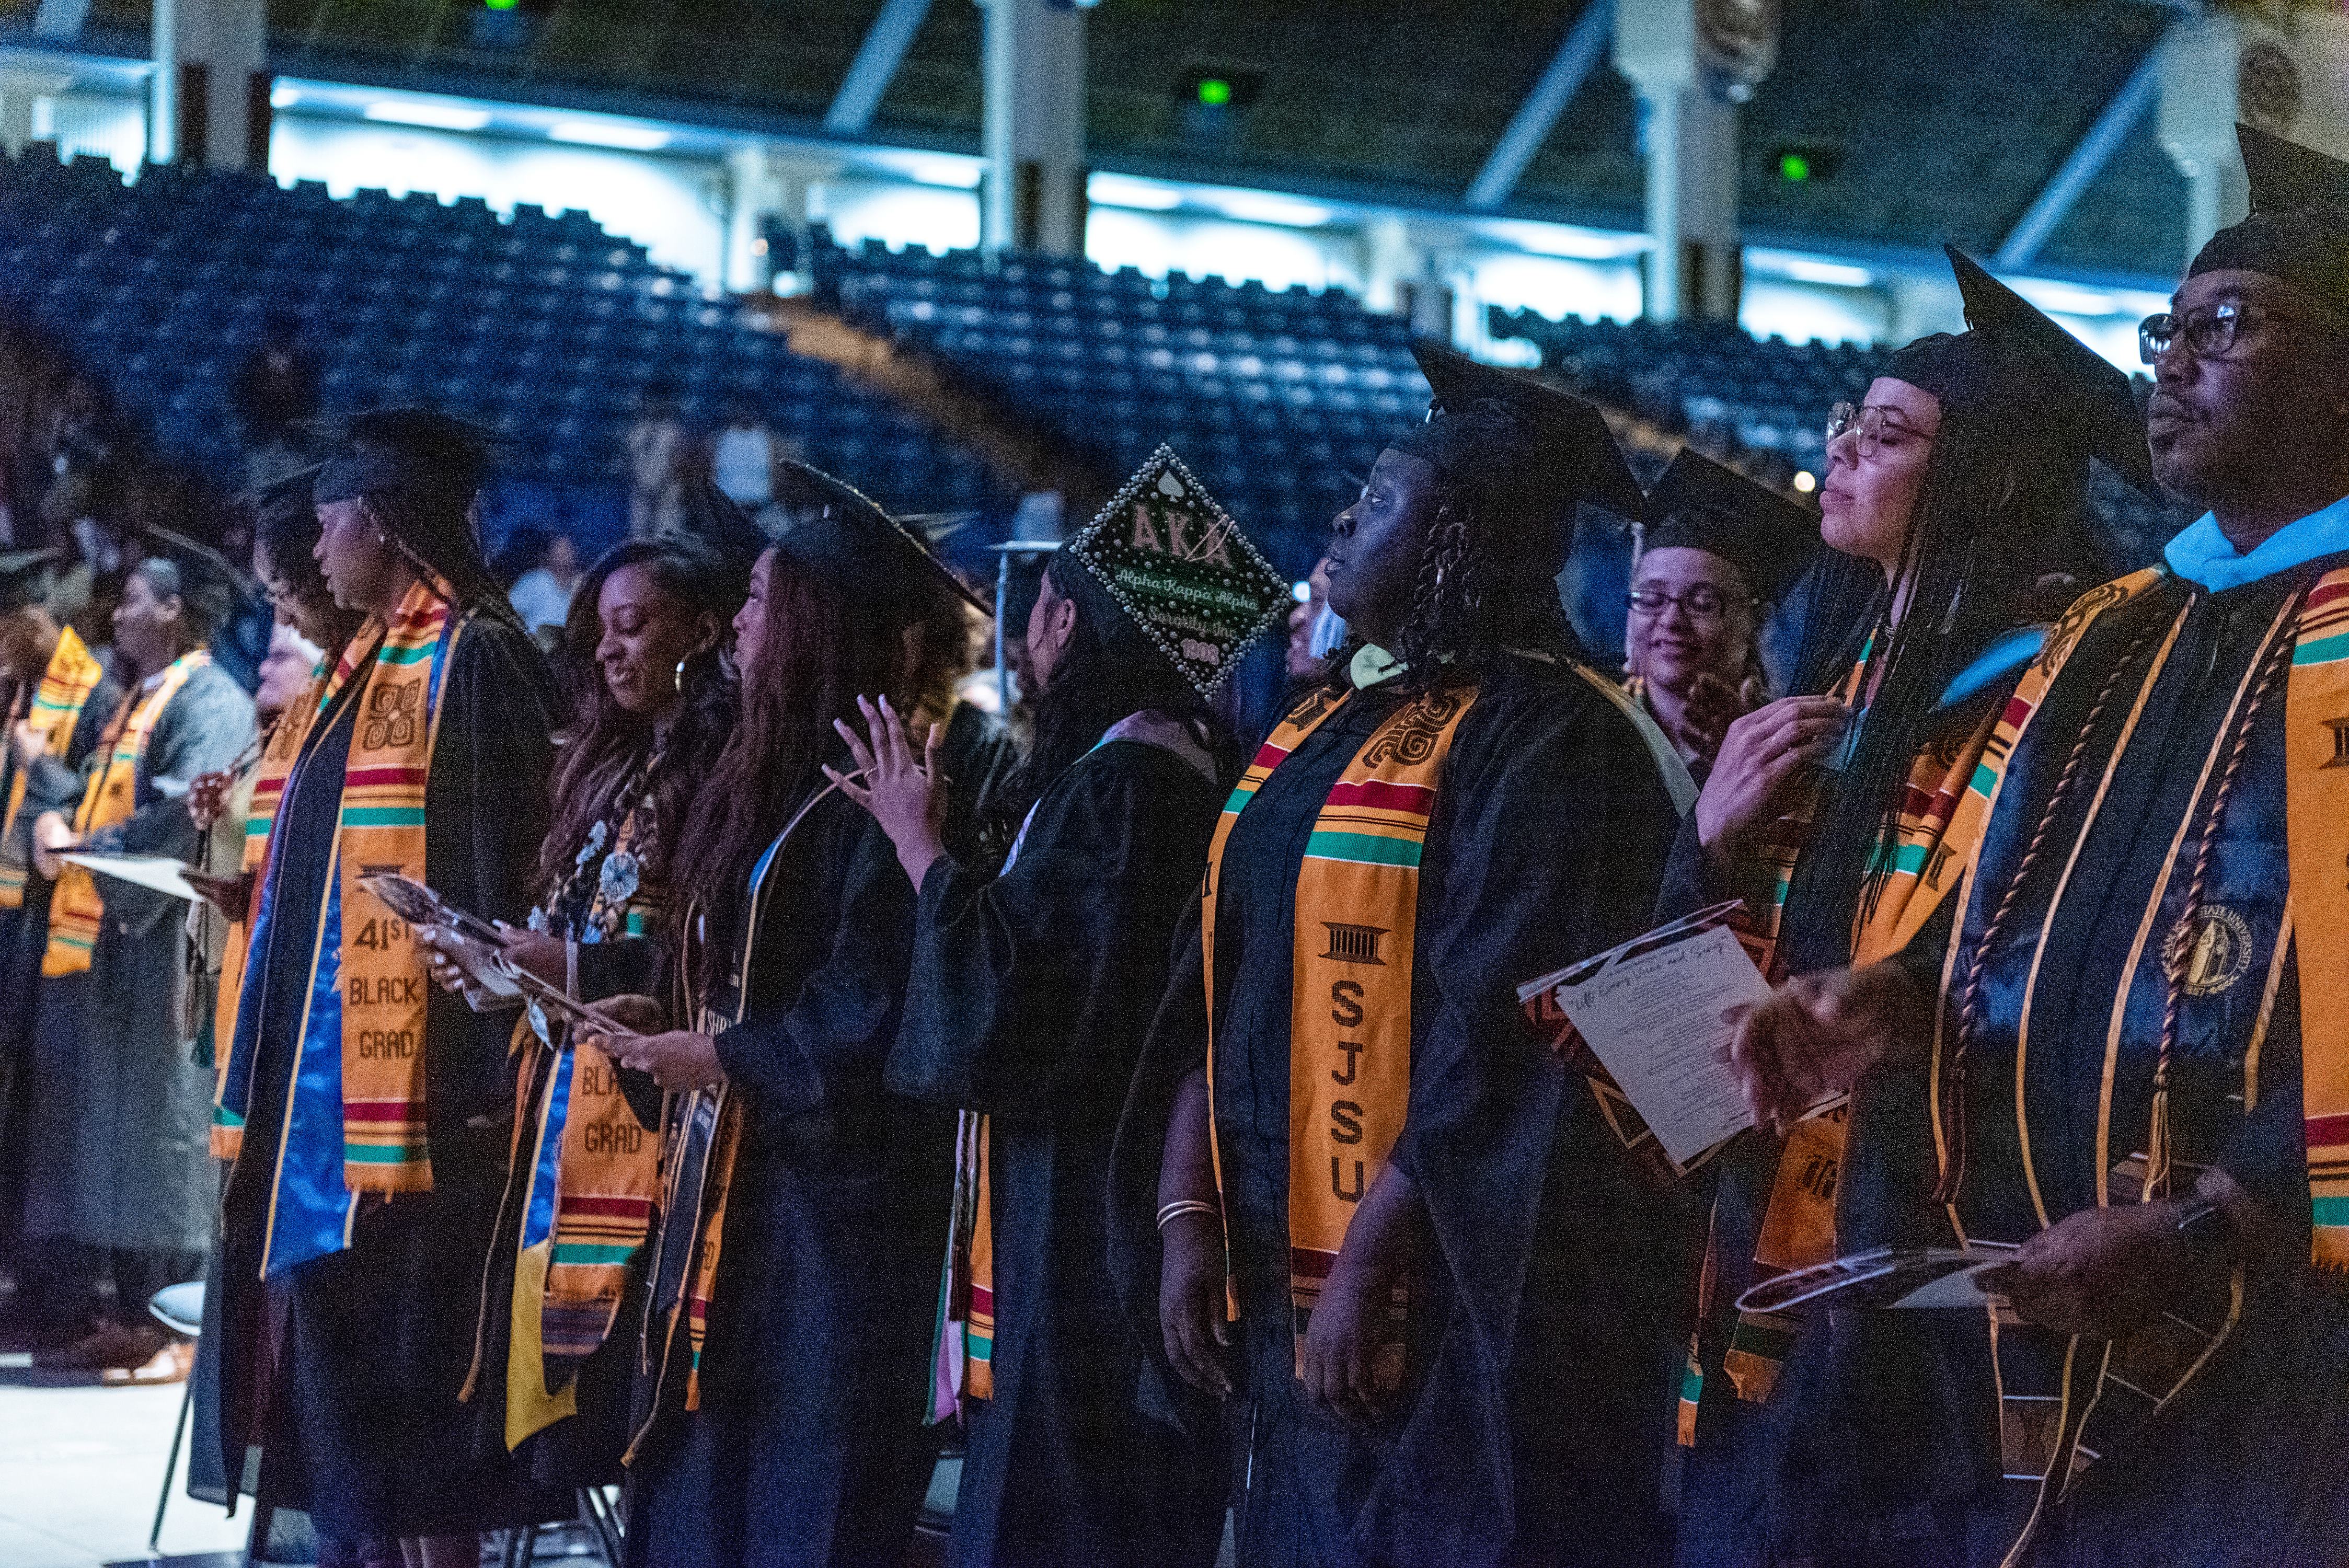 Black leadership and graduation